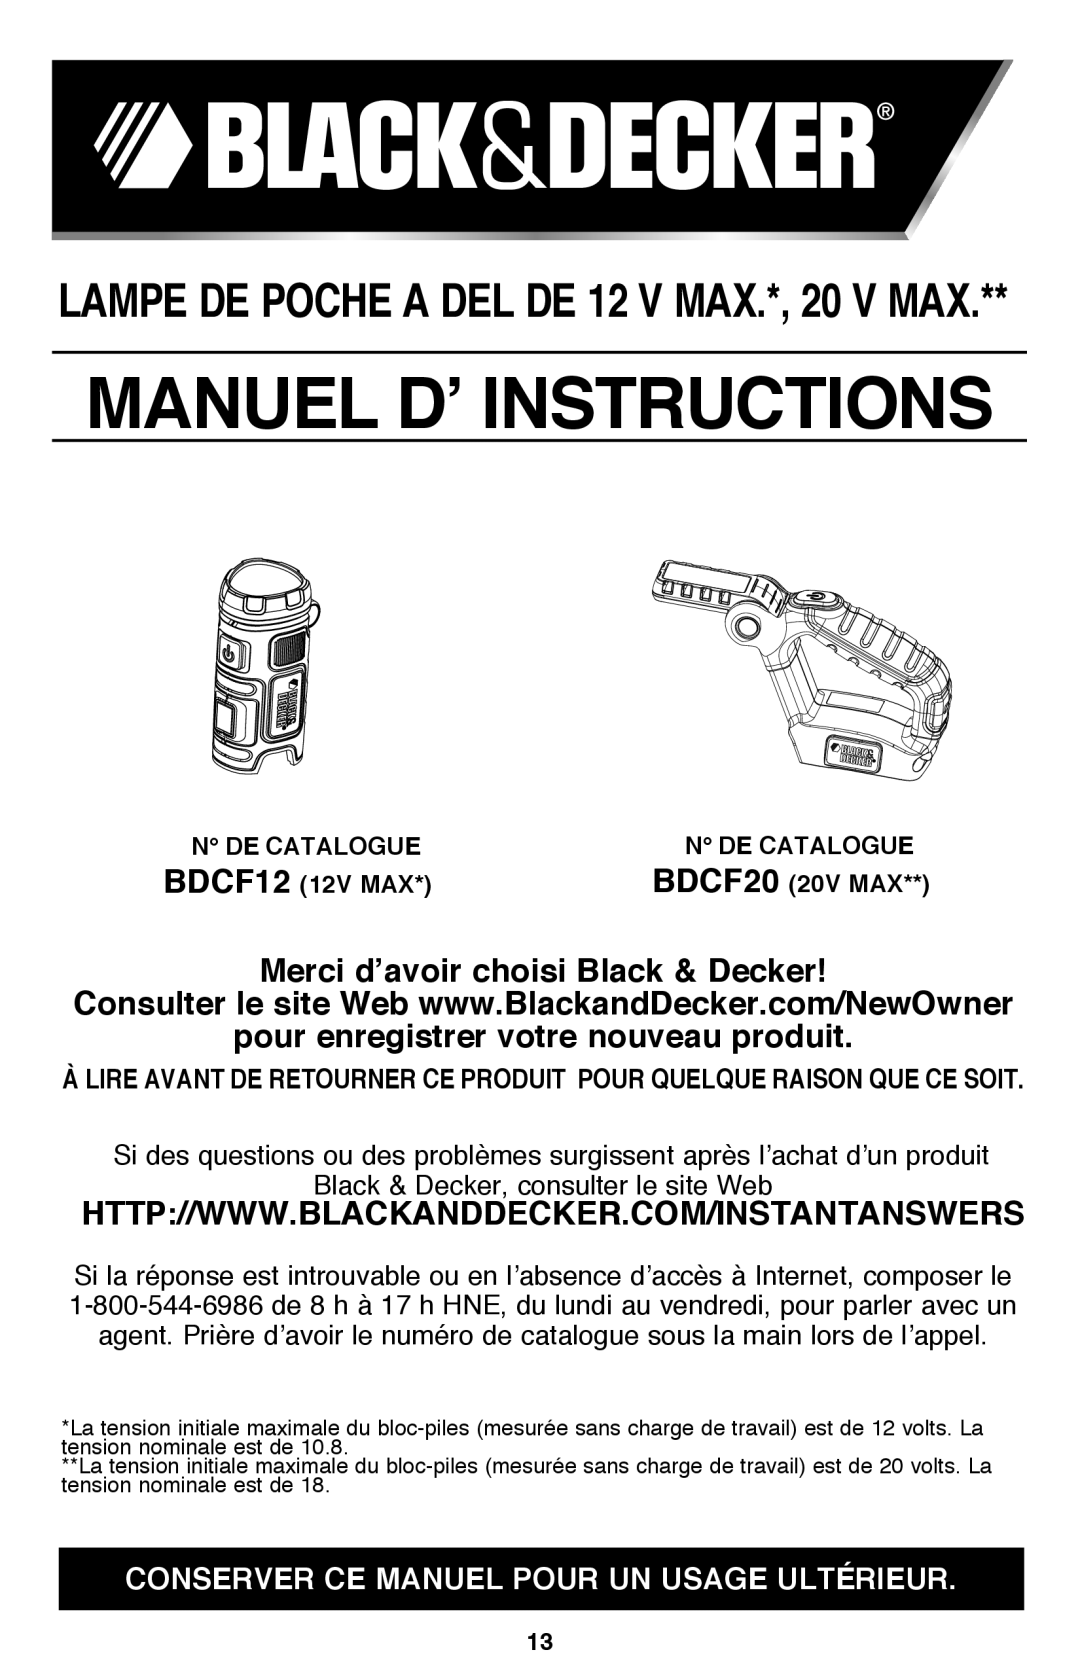 Black & Decker BDCF12, BDCF20 manual LAMPE DE POCHE A DEL DE 12 V MAX.*, 20 V MAX, Merci d’avoir choisi Black & Decker 